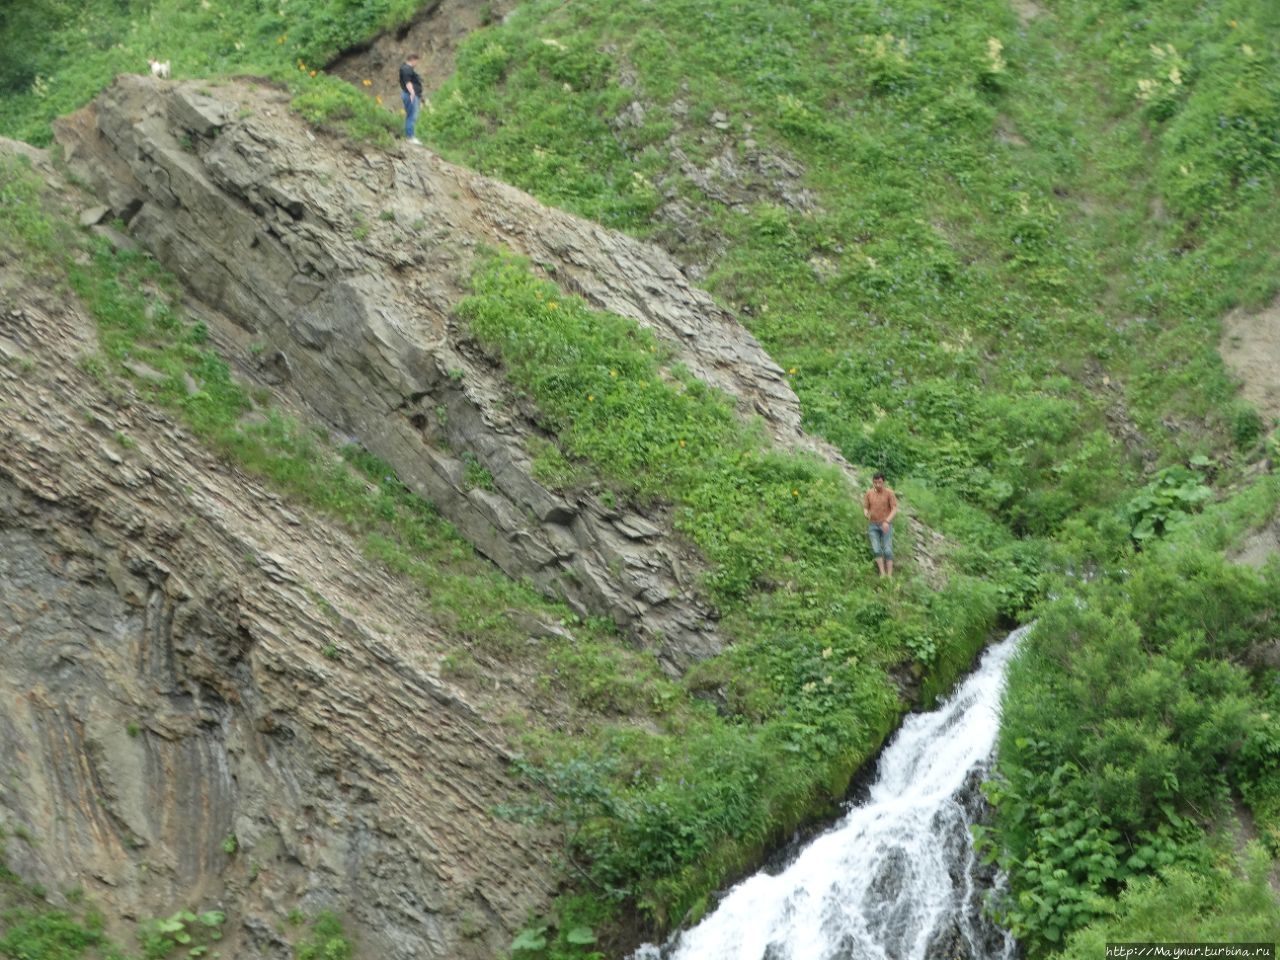 Слева по склону  видны две  фигуры. Снимок  для  сравнения  масштабов склонов  и водопада. Невельск, Россия